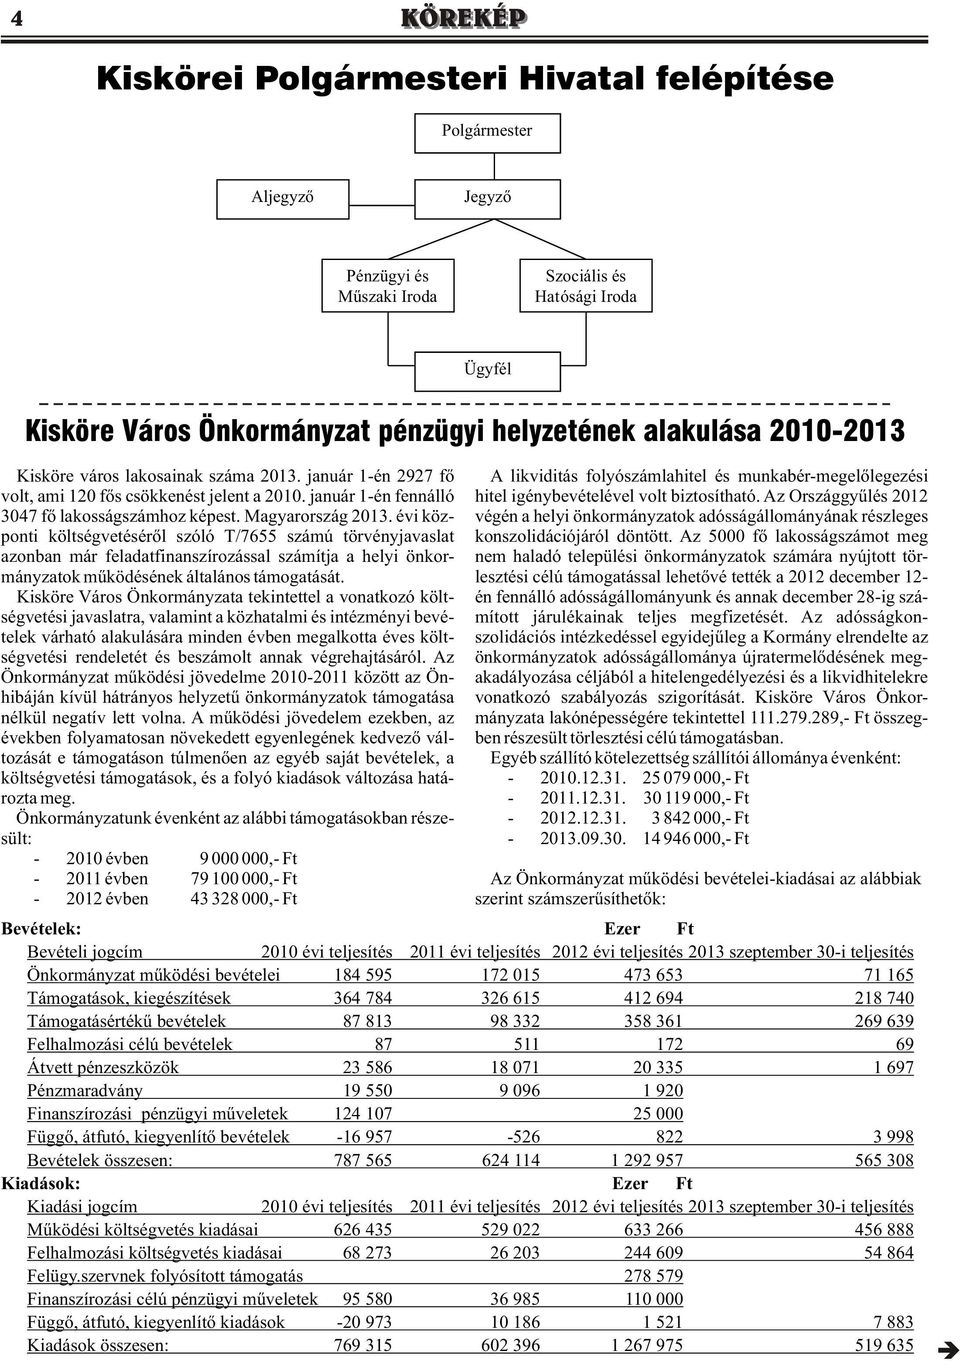 január 1-én fennálló hitel igénybevételével volt biztosítható. Az Országgyûlés 2012 3047 fõ lakosságszámhoz képest. Magyarország 2013.